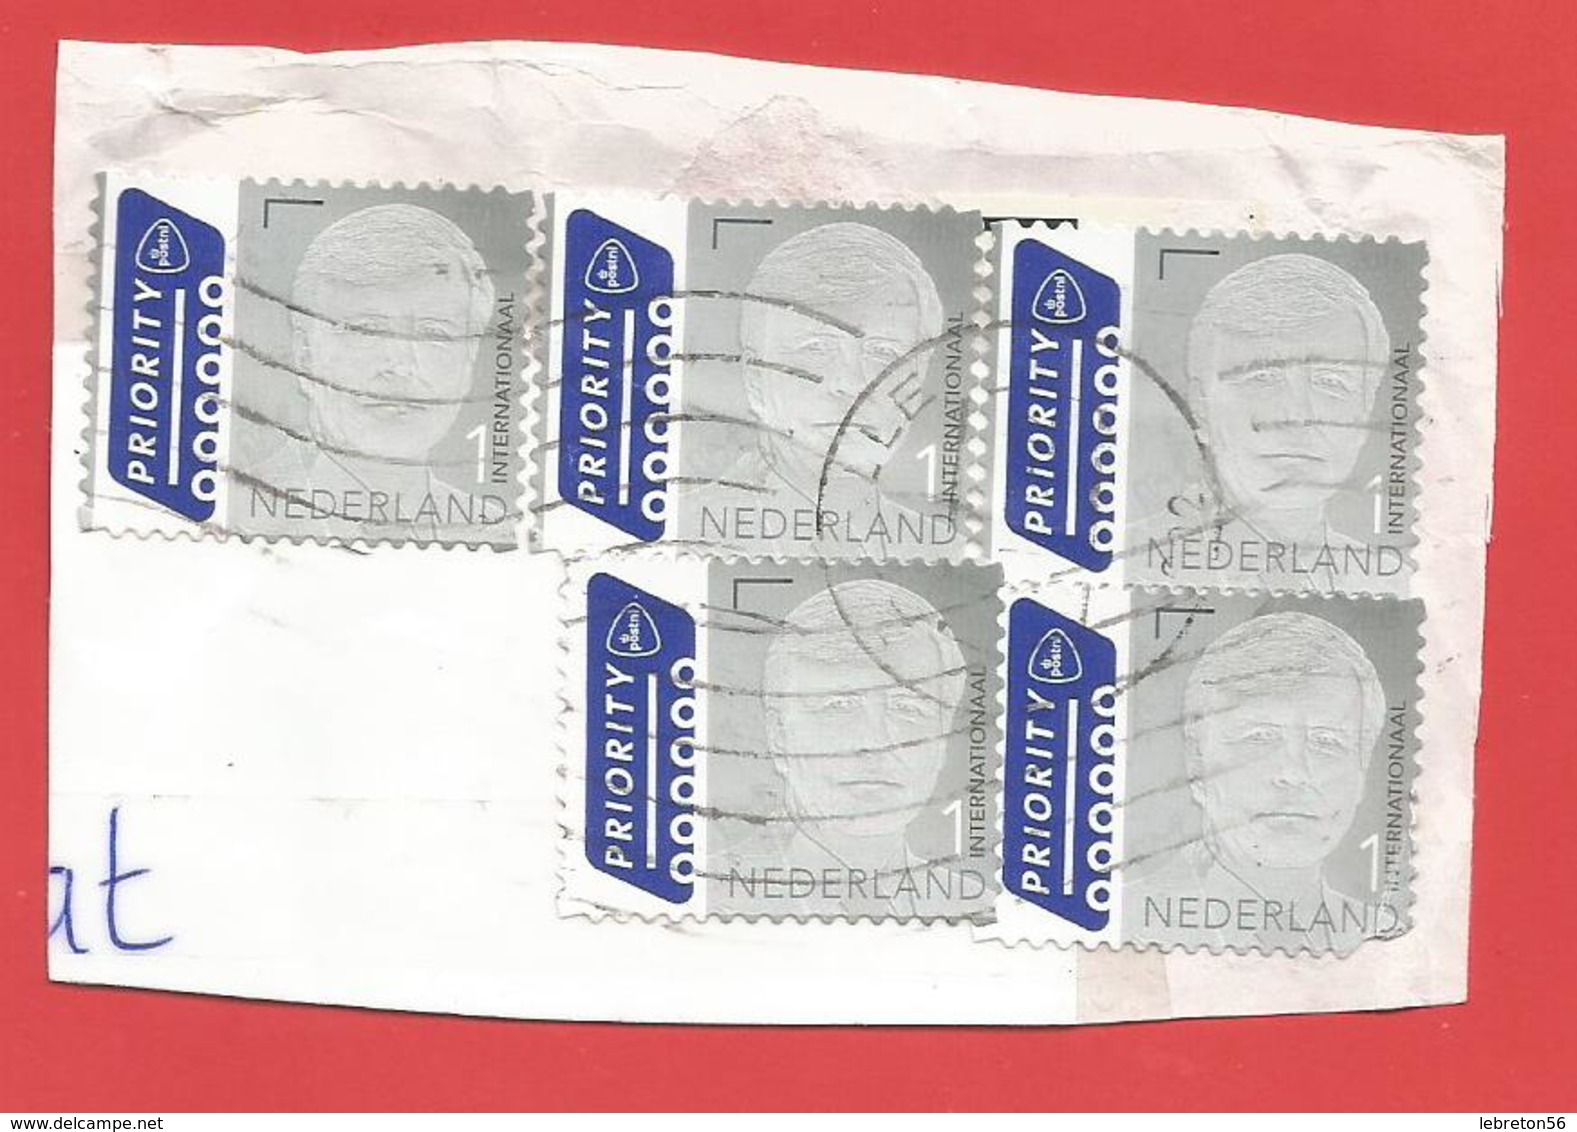 Enveloppe Timbrée Découpée    ( 5 Timbres Euros  Tres Jolis   ) Voir Photo - Lettres & Documents